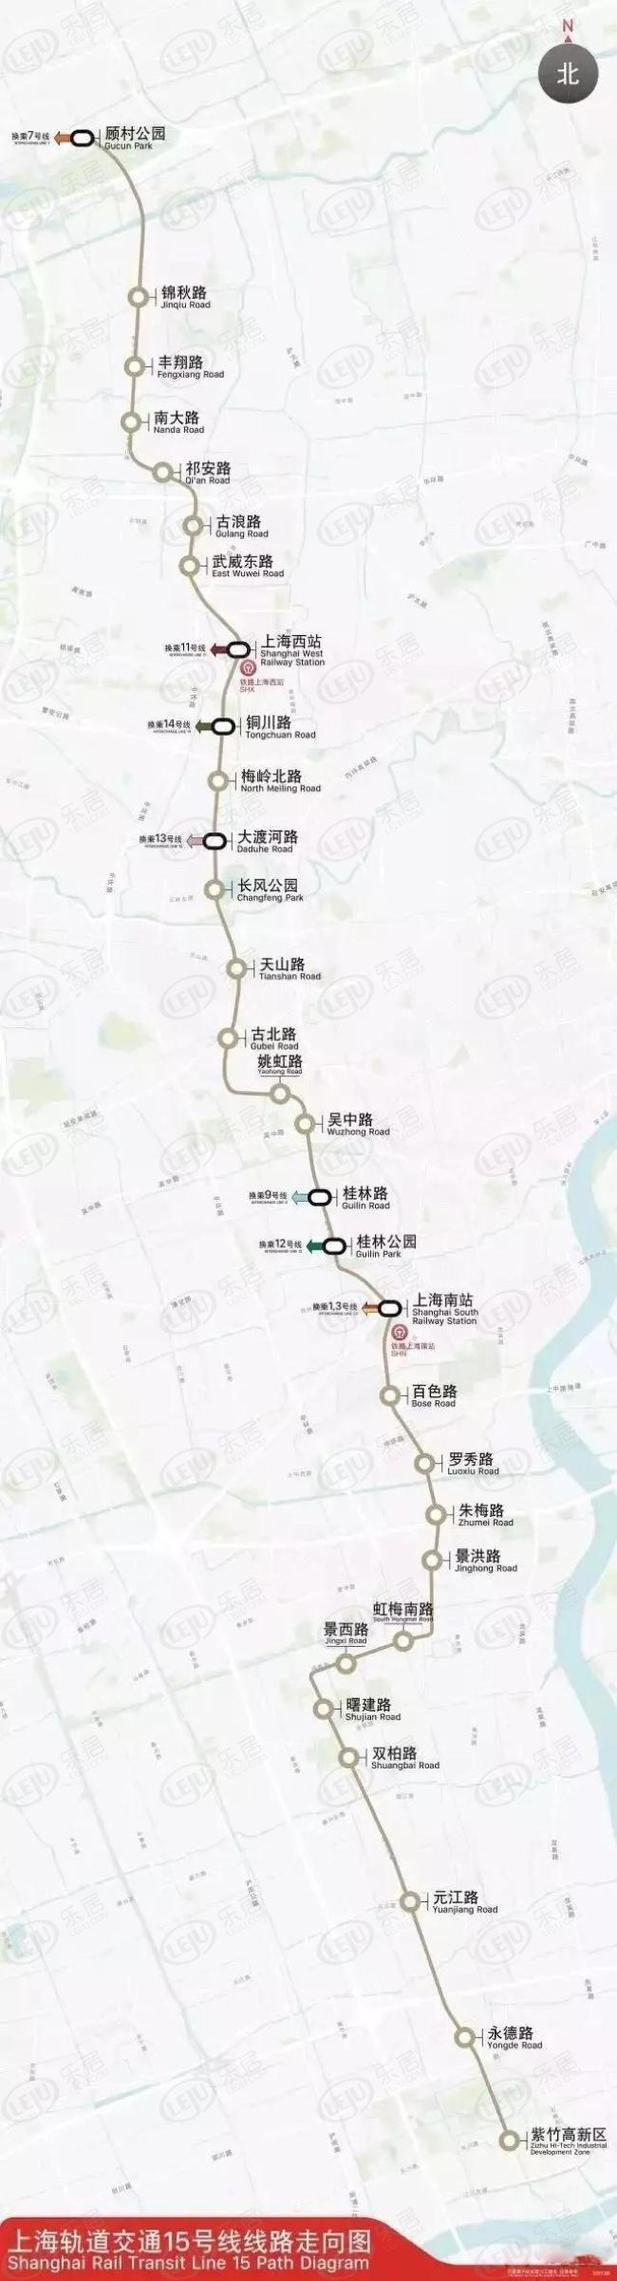 上海蓝宫大饭店,蓝宫大饭店到嘉定北地铁站多少公里